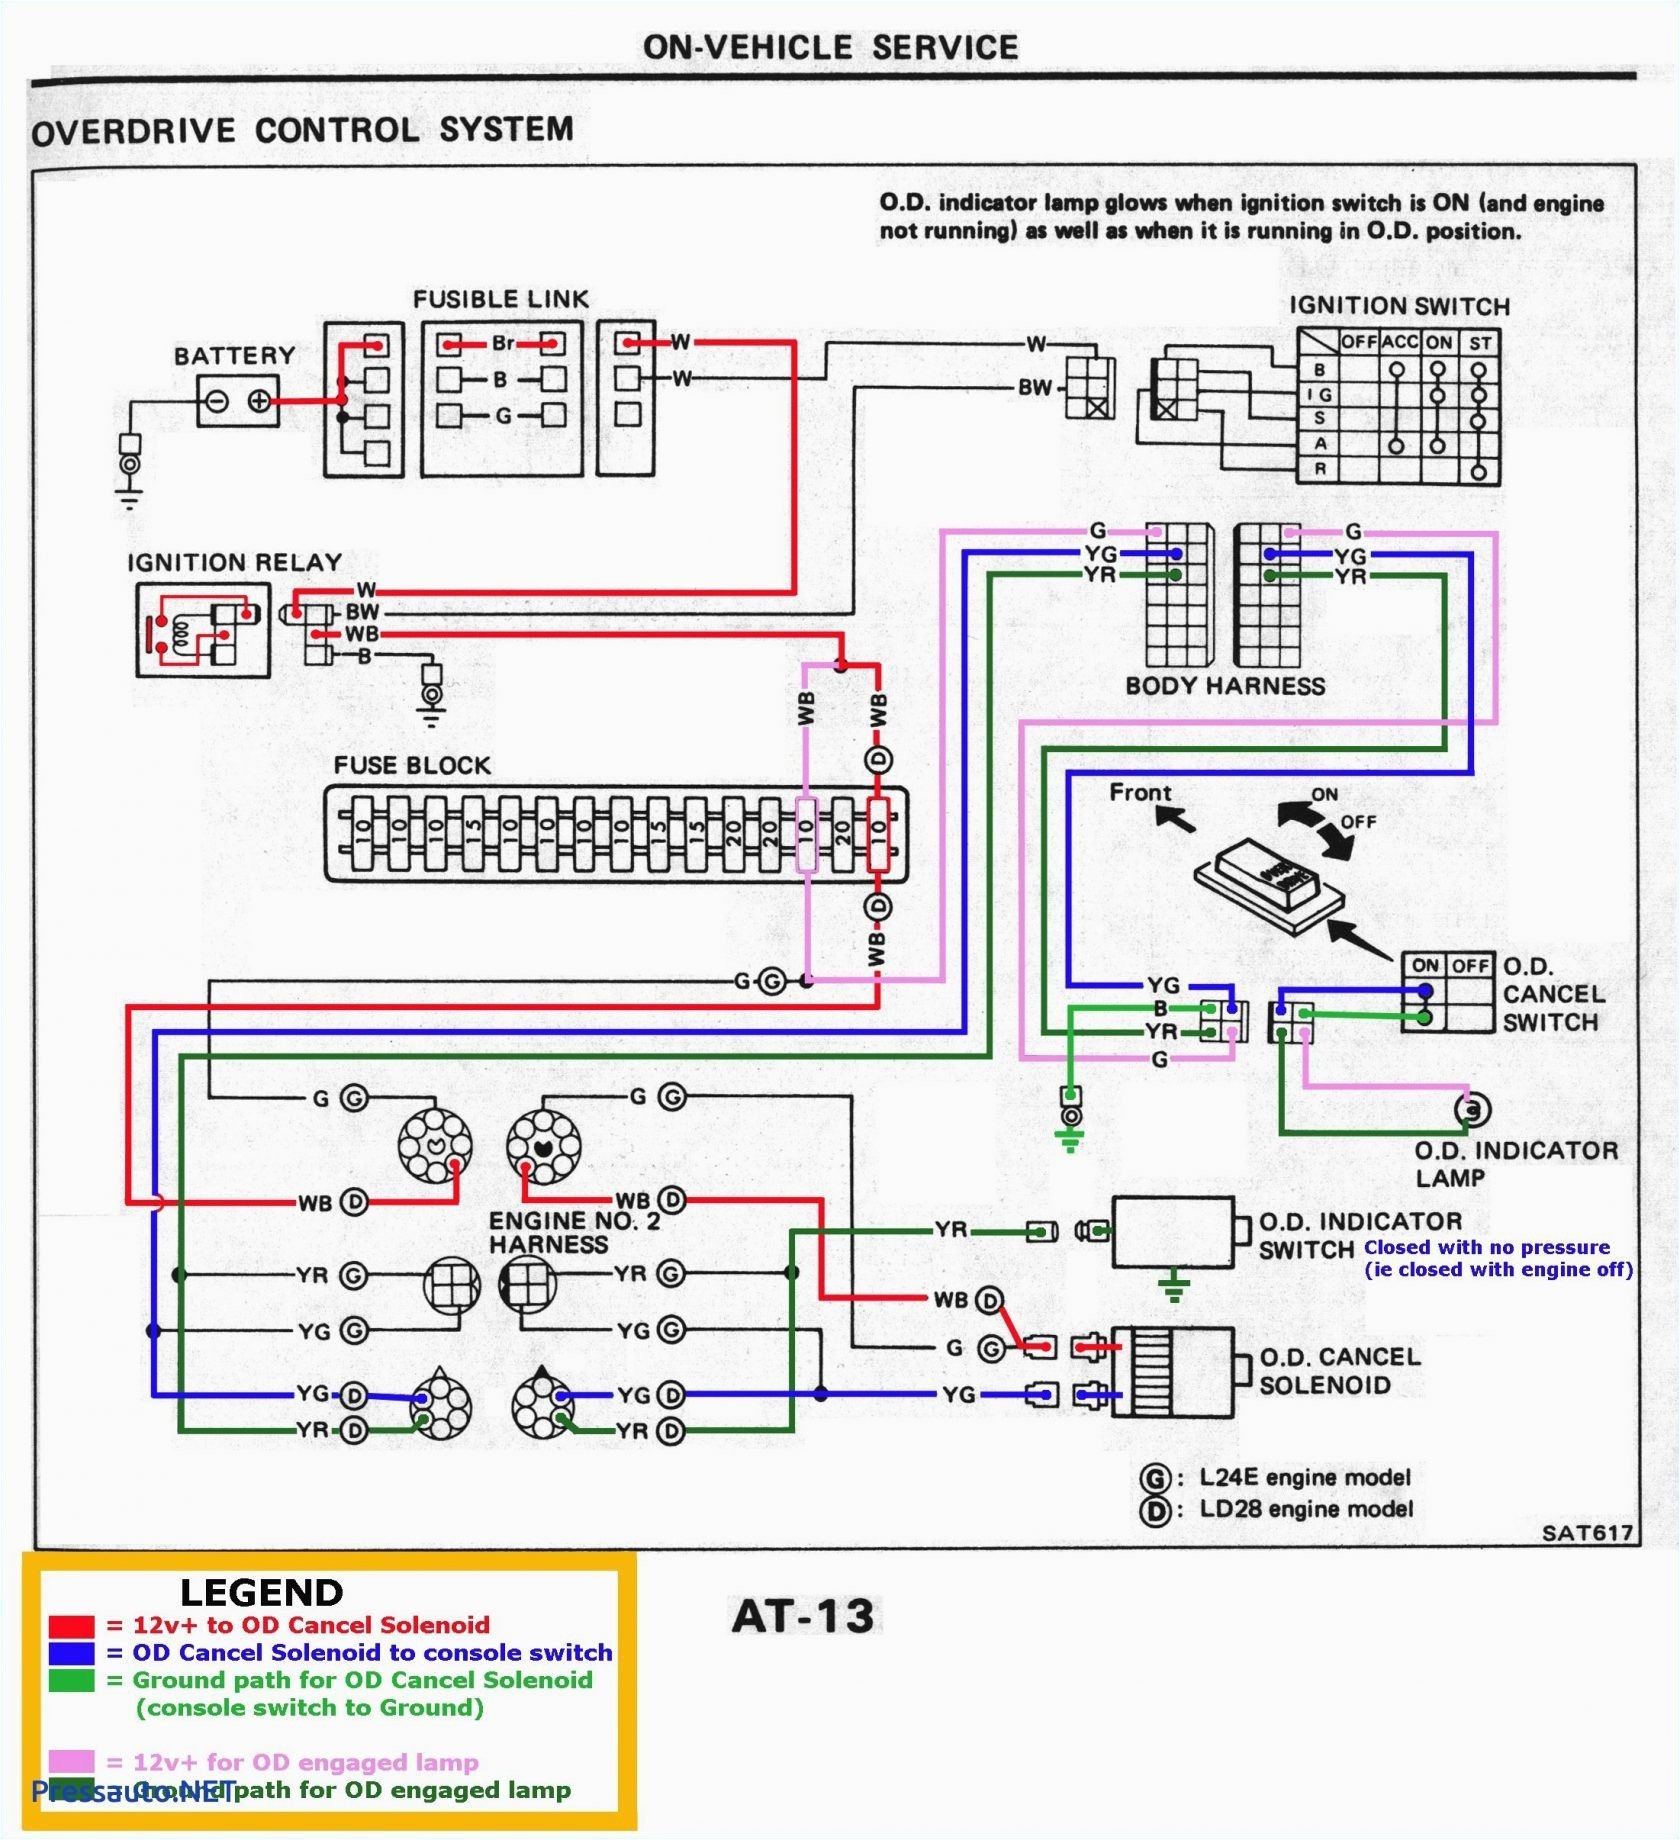 1996 toyota camry spark plug wire diagram plug wiring diagram 1998 avalon wiring diagram schematic of 1996 toyota camry spark plug wire diagram